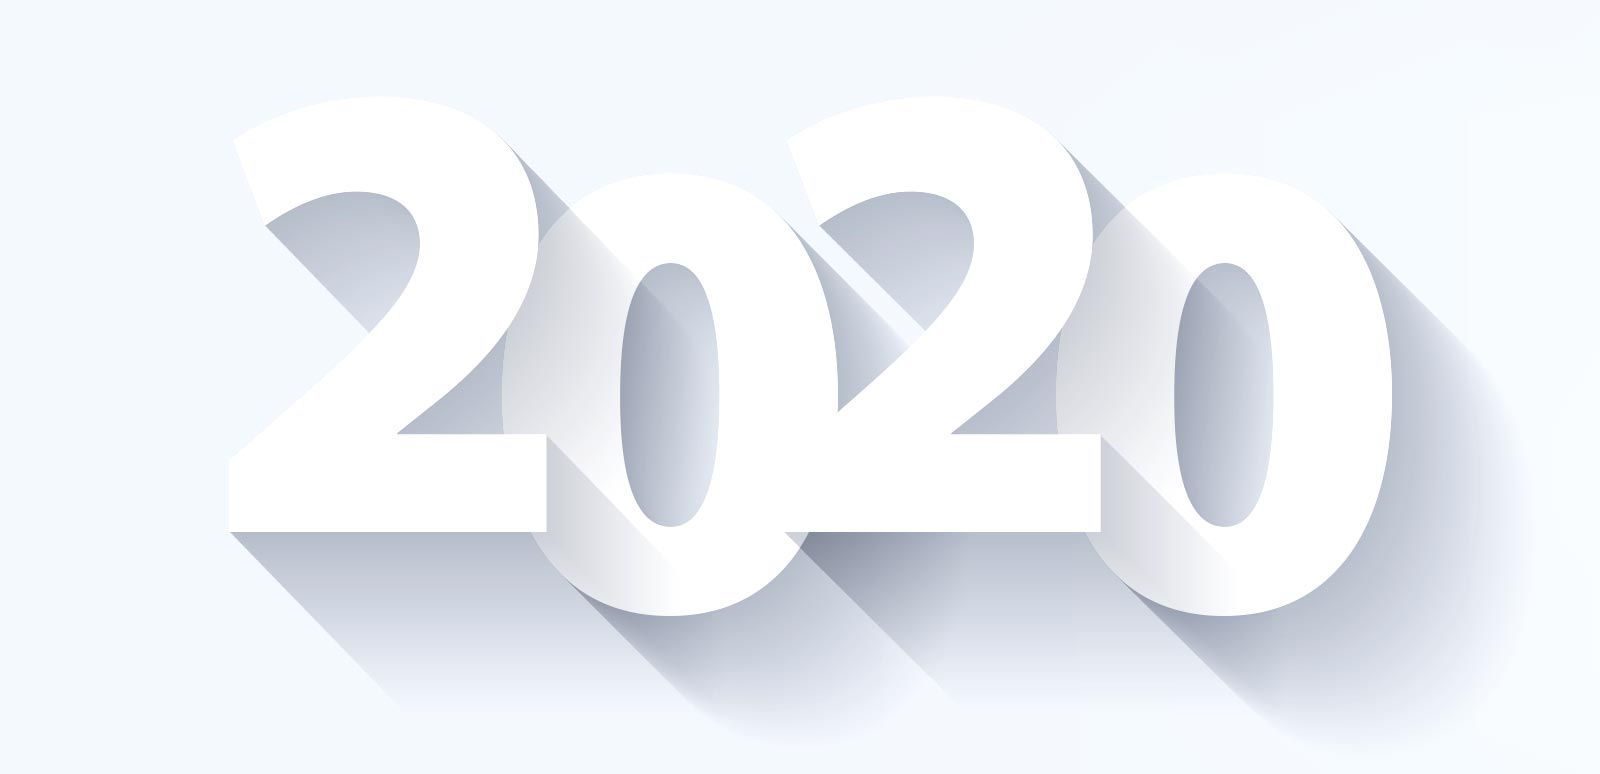 Kuhn Edelstahl Blog Ausblick 2020